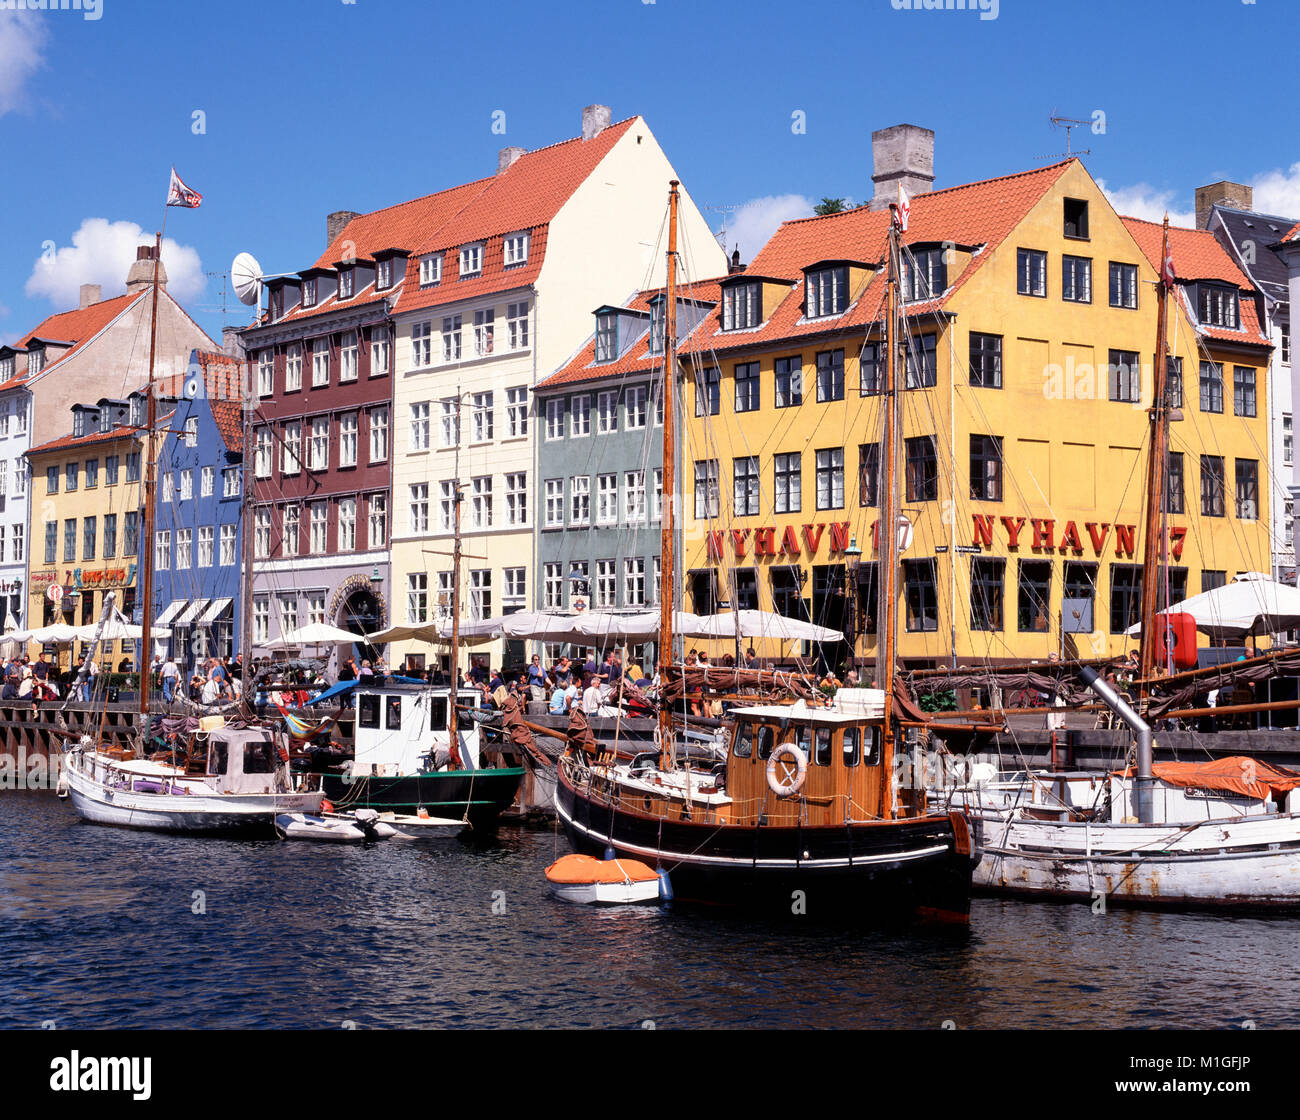 Nyhavn, Copenhagen, Denmark. Stock Photo